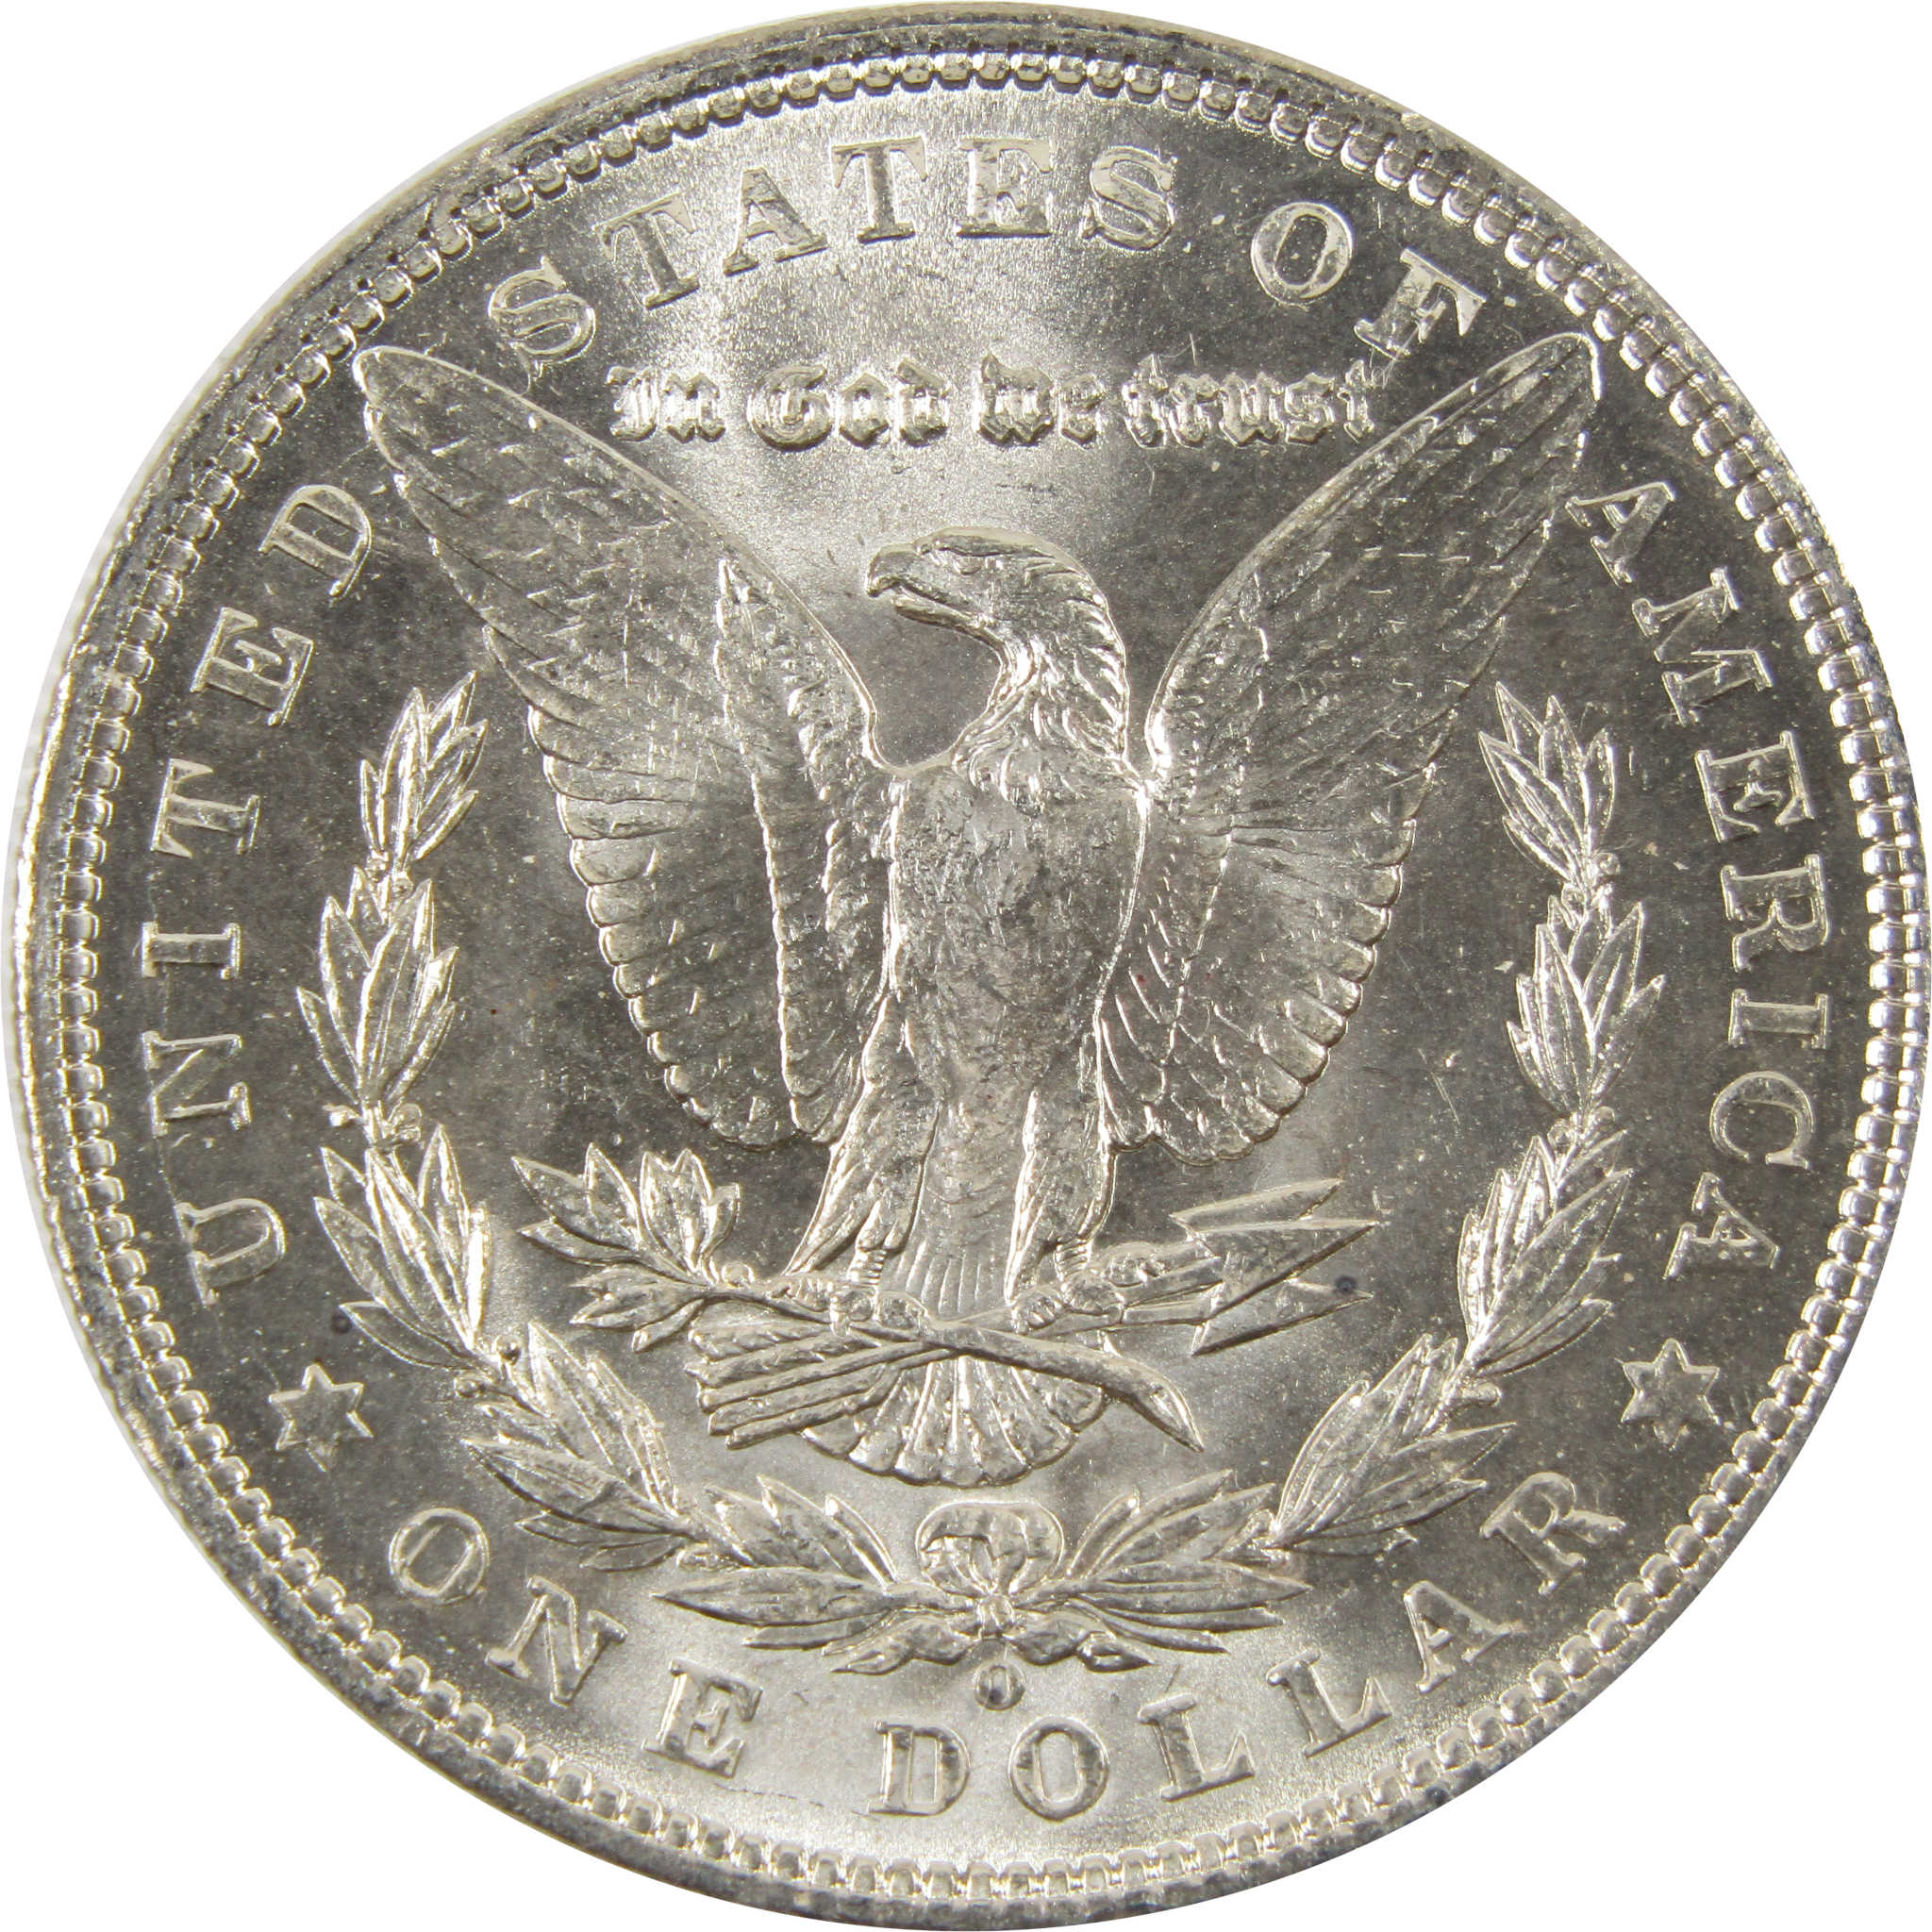 1903 O Morgan Dollar BU Choice Uncirculated 90% Silver $1 SKU:I7510 - Morgan coin - Morgan silver dollar - Morgan silver dollar for sale - Profile Coins &amp; Collectibles